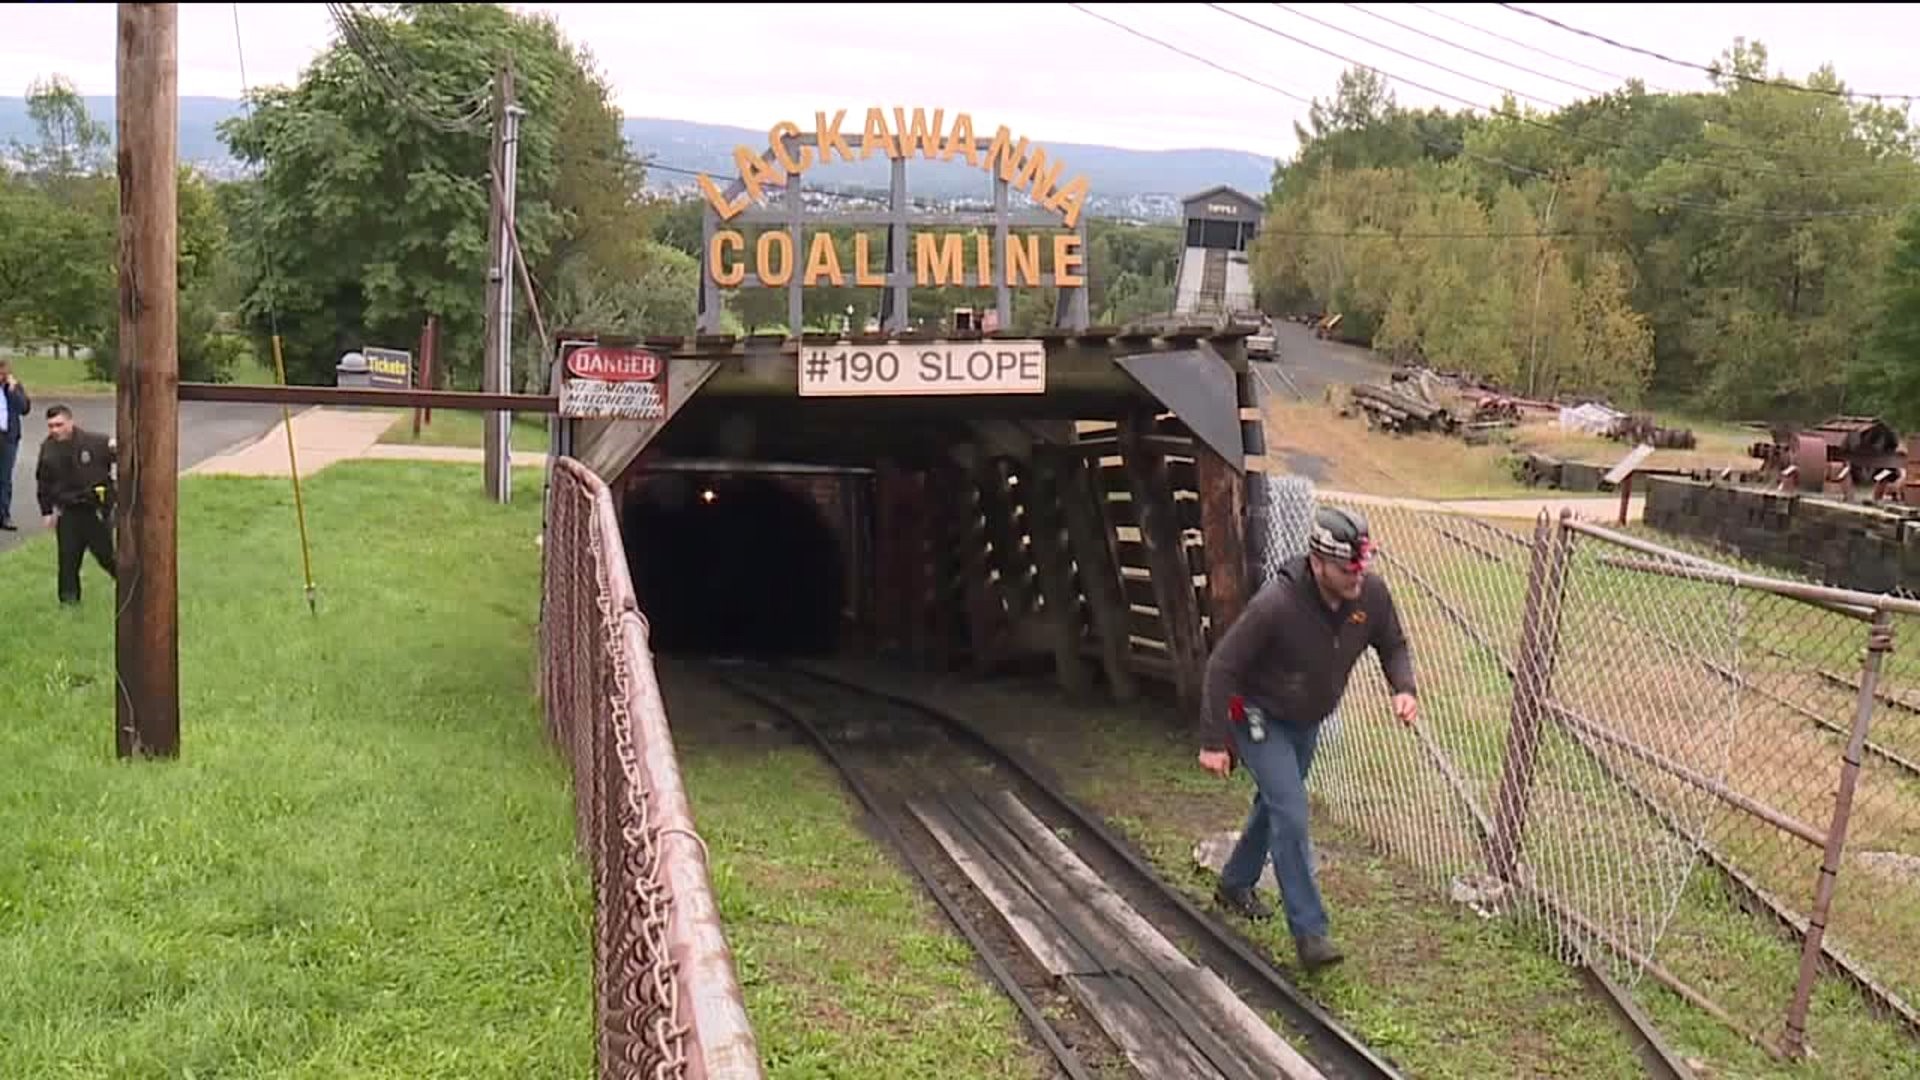 coal mine tour sydney ns